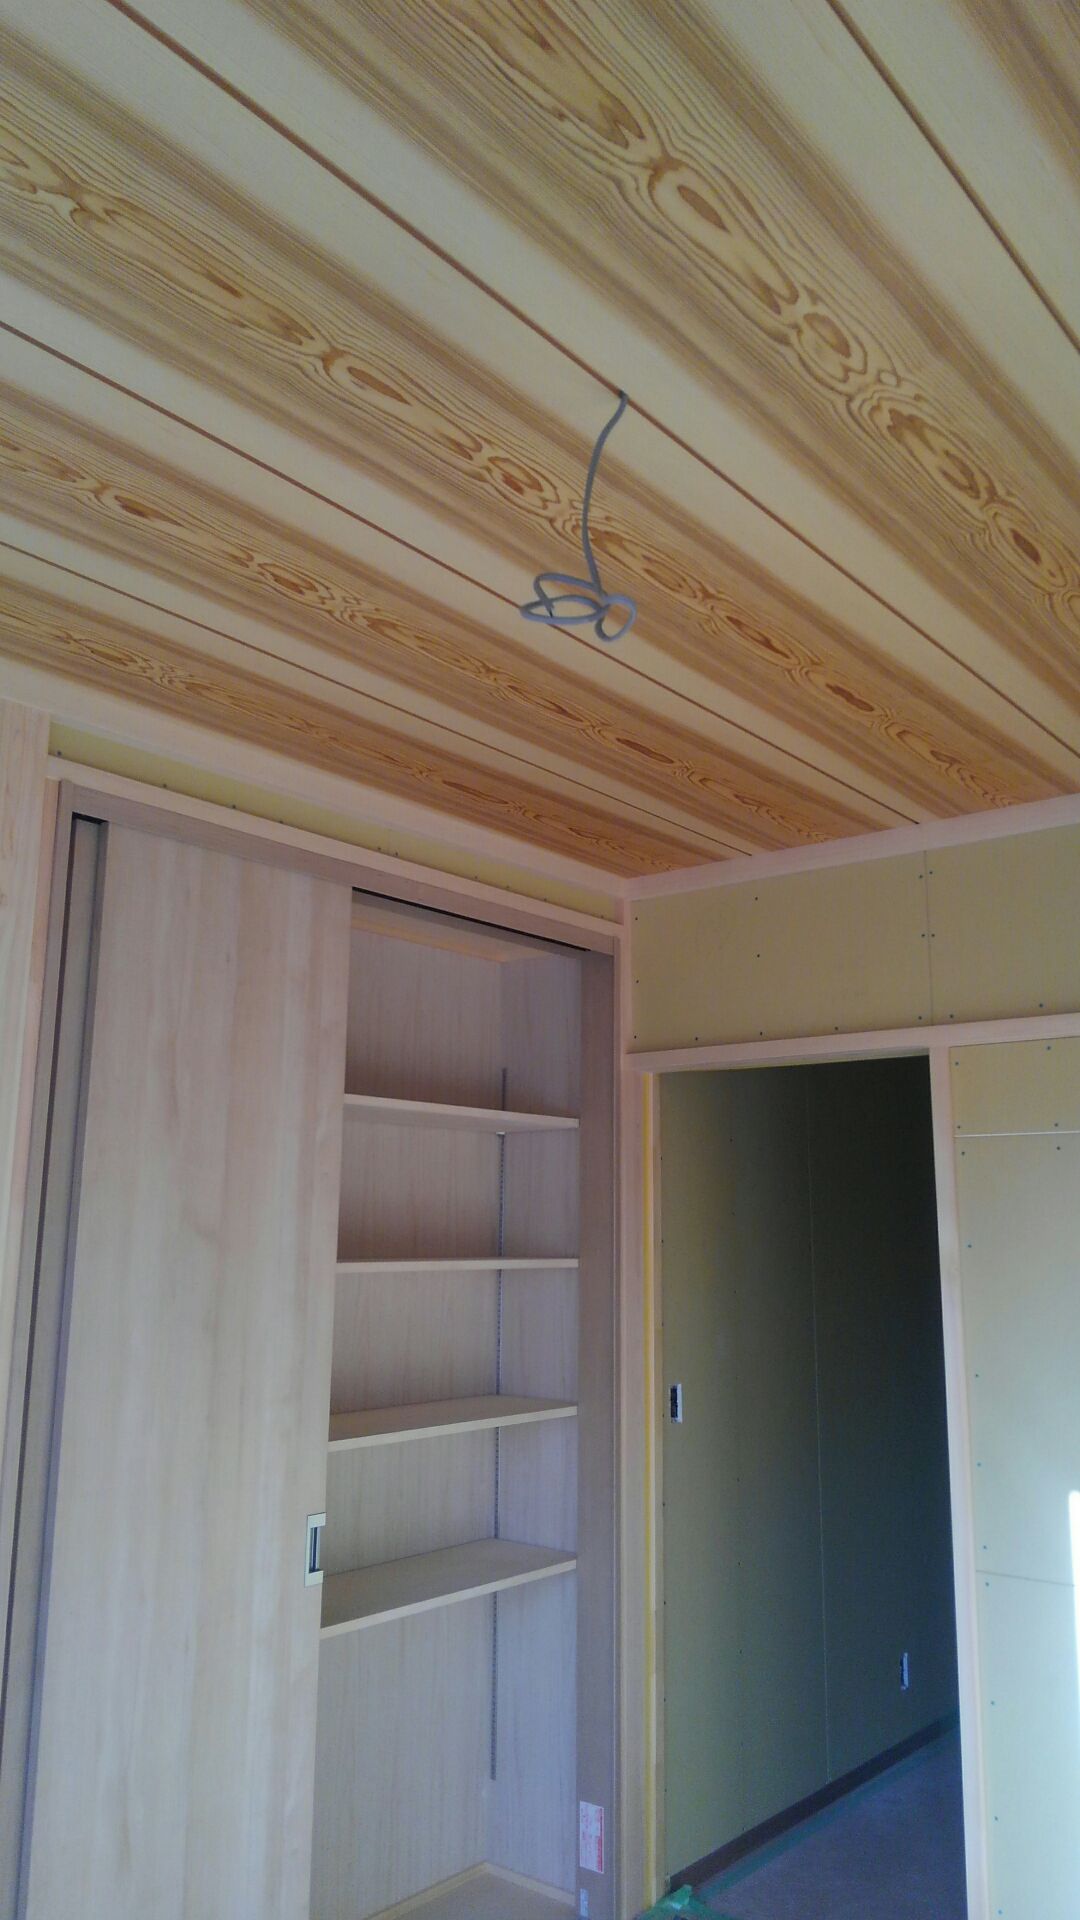 和室の天井板 キレイな板目の天井になりました。